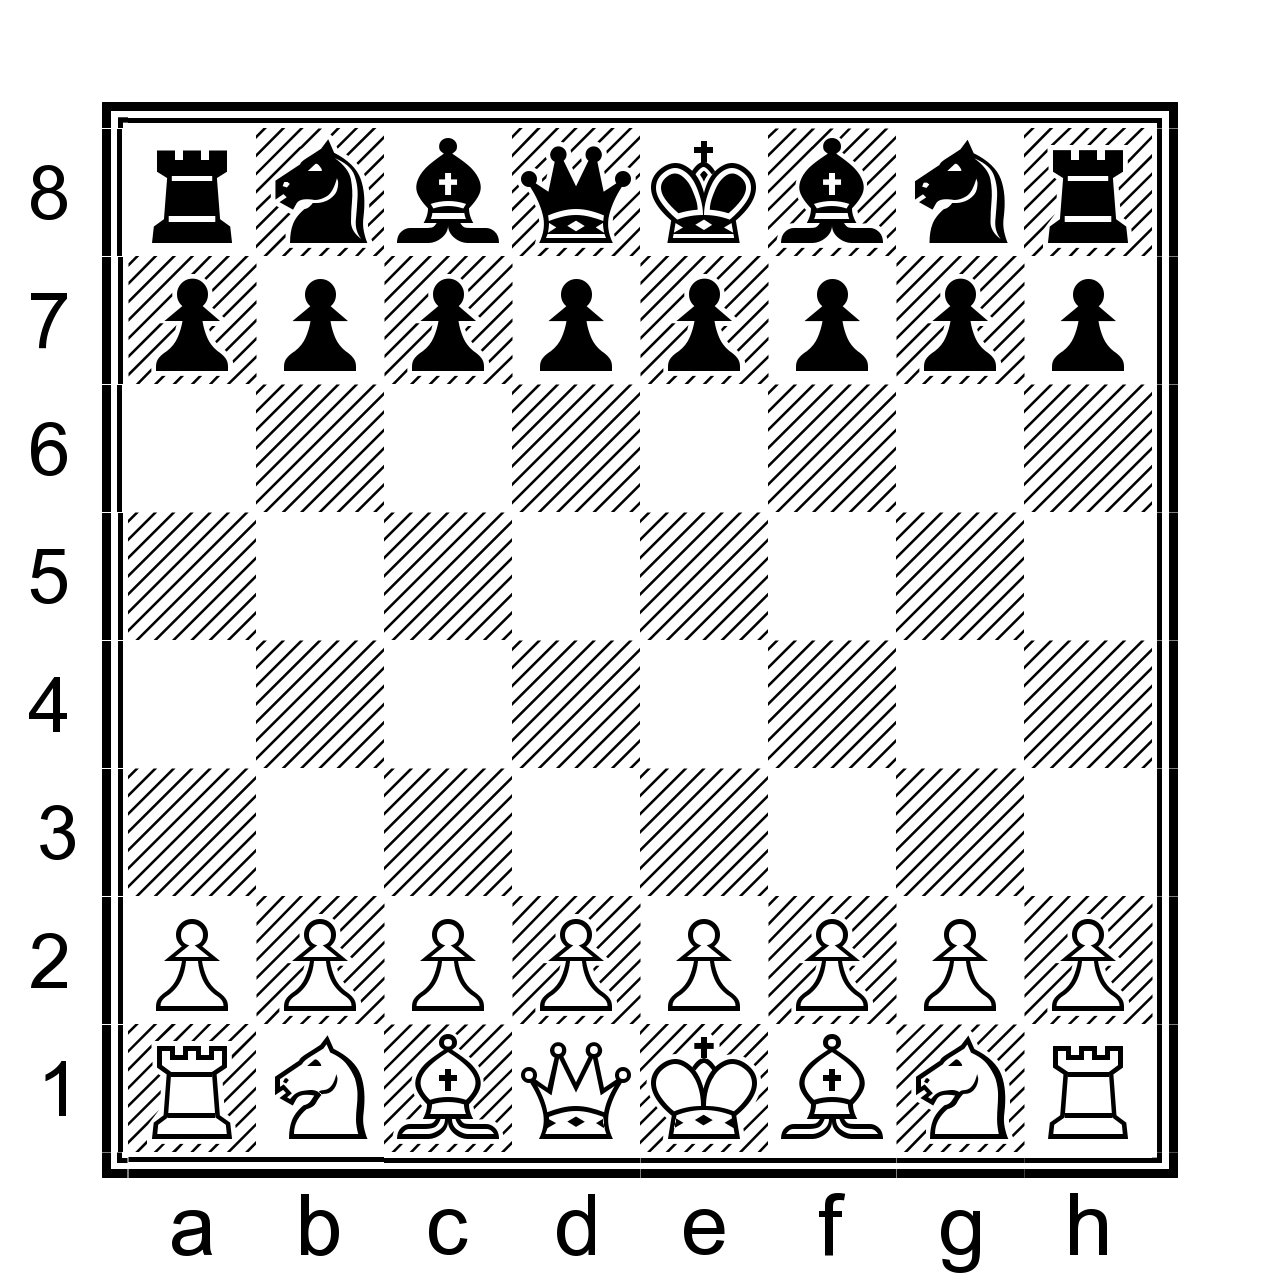 Шахматы расставить фигуры на доске. Схема расстановки фигур в шахматах. Расположение фигур на шахматной доске. Схема расставления шахмат. Расстановка шахматных фигур на шахматной.